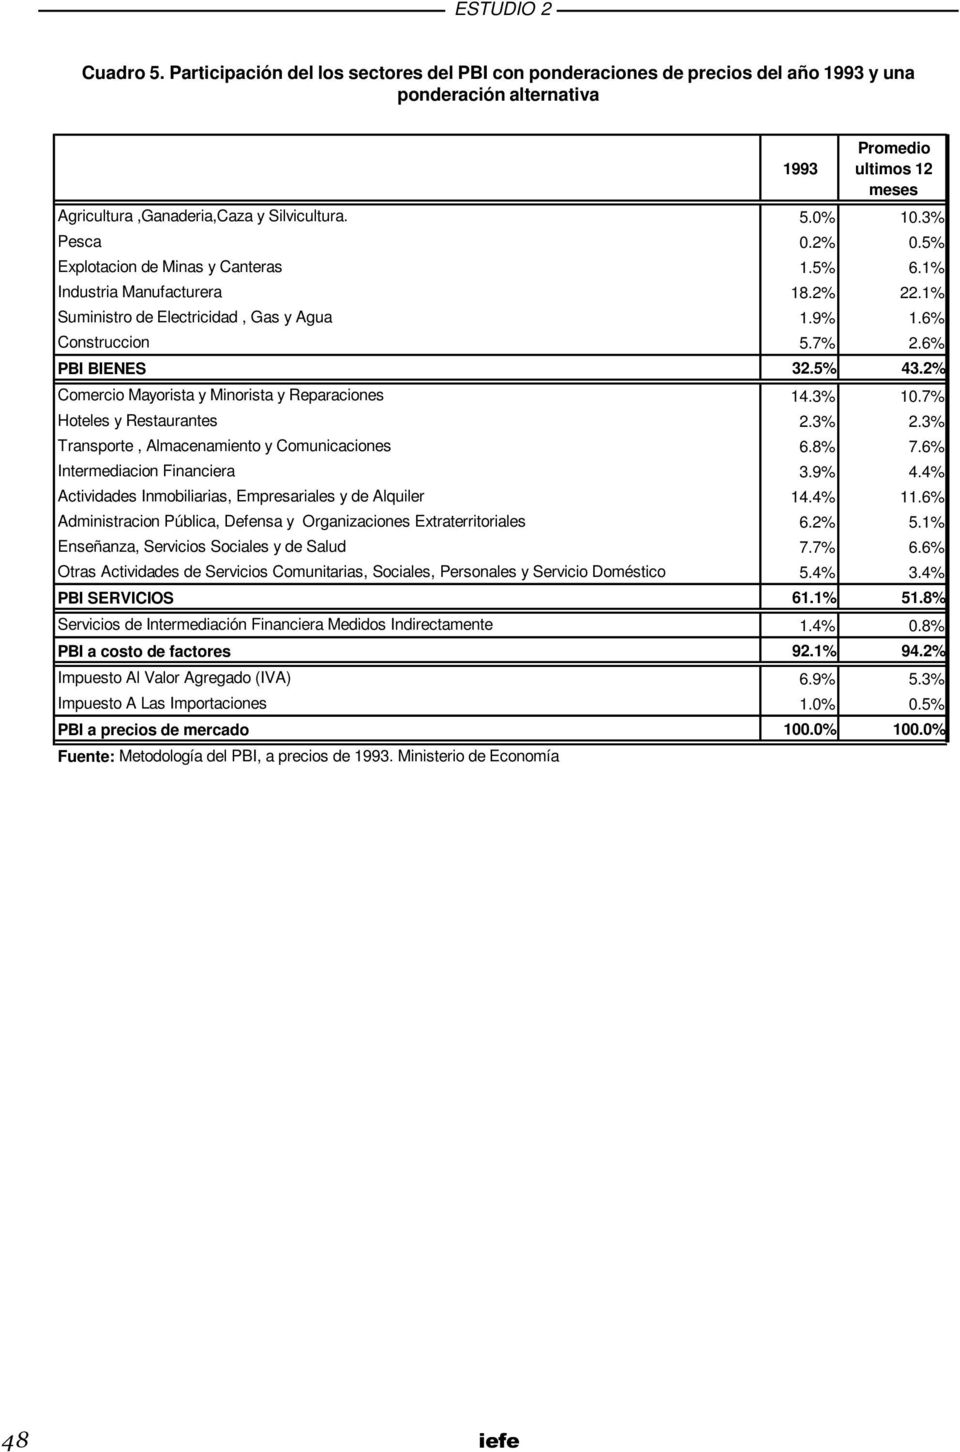 2% Comercio Mayorista y Minorista y Reparaciones 14.3% 10.7% Hoteles y Restaurantes 2.3% 2.3% Transporte, Almacenamiento y Comunicaciones 6.8% 7.6% Intermediacion Financiera 3.9% 4.